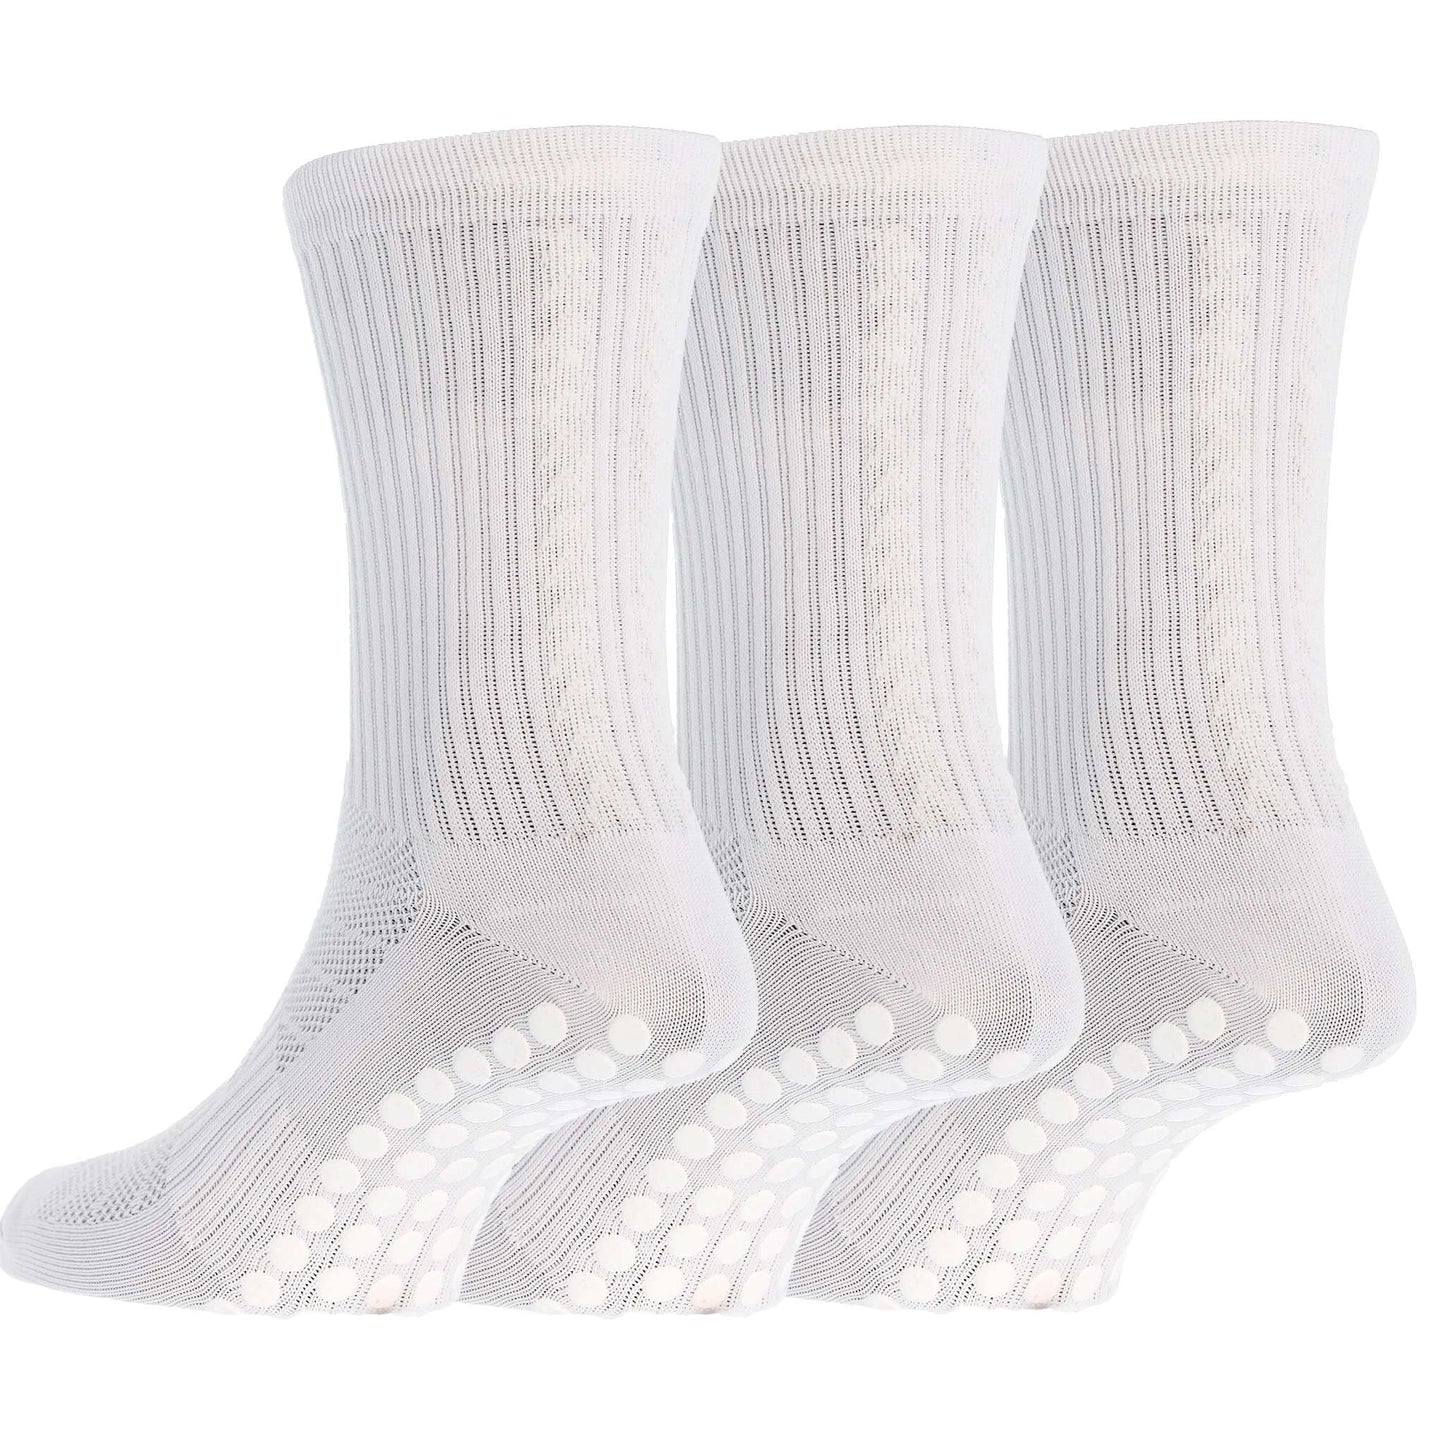 Salve Grip-socks Light 3-pack, white